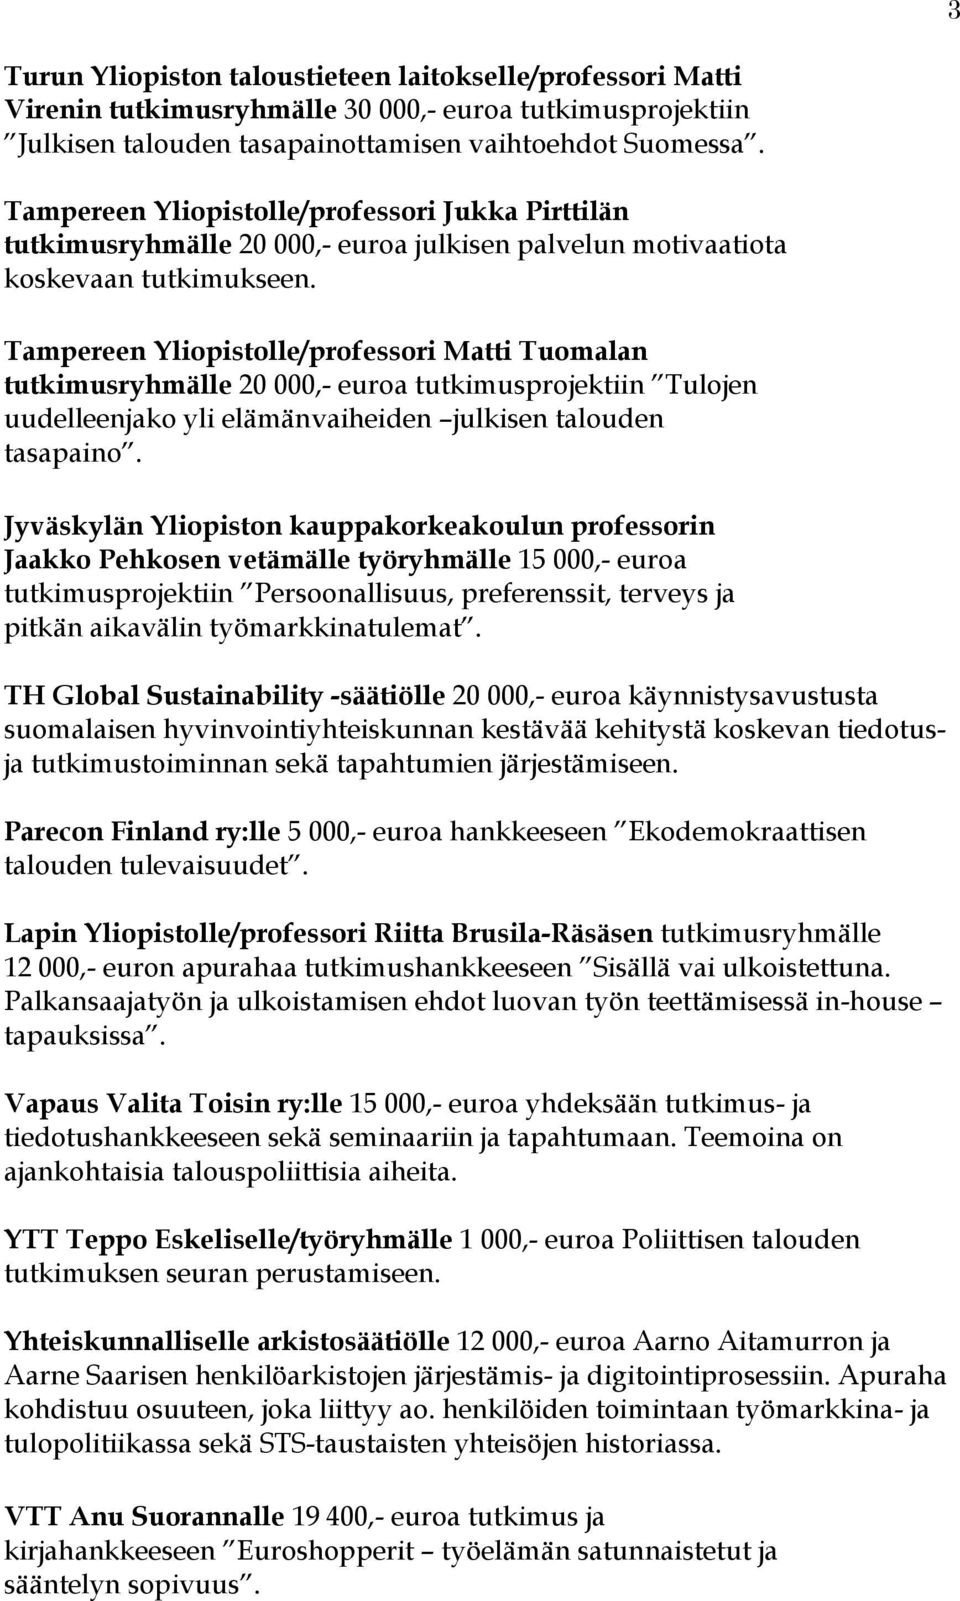 Tampereen Yliopistolle/professori Matti Tuomalan tutkimusryhmälle 20 000,- euroa tutkimusprojektiin Tulojen uudelleenjako yli elämänvaiheiden julkisen talouden tasapaino.